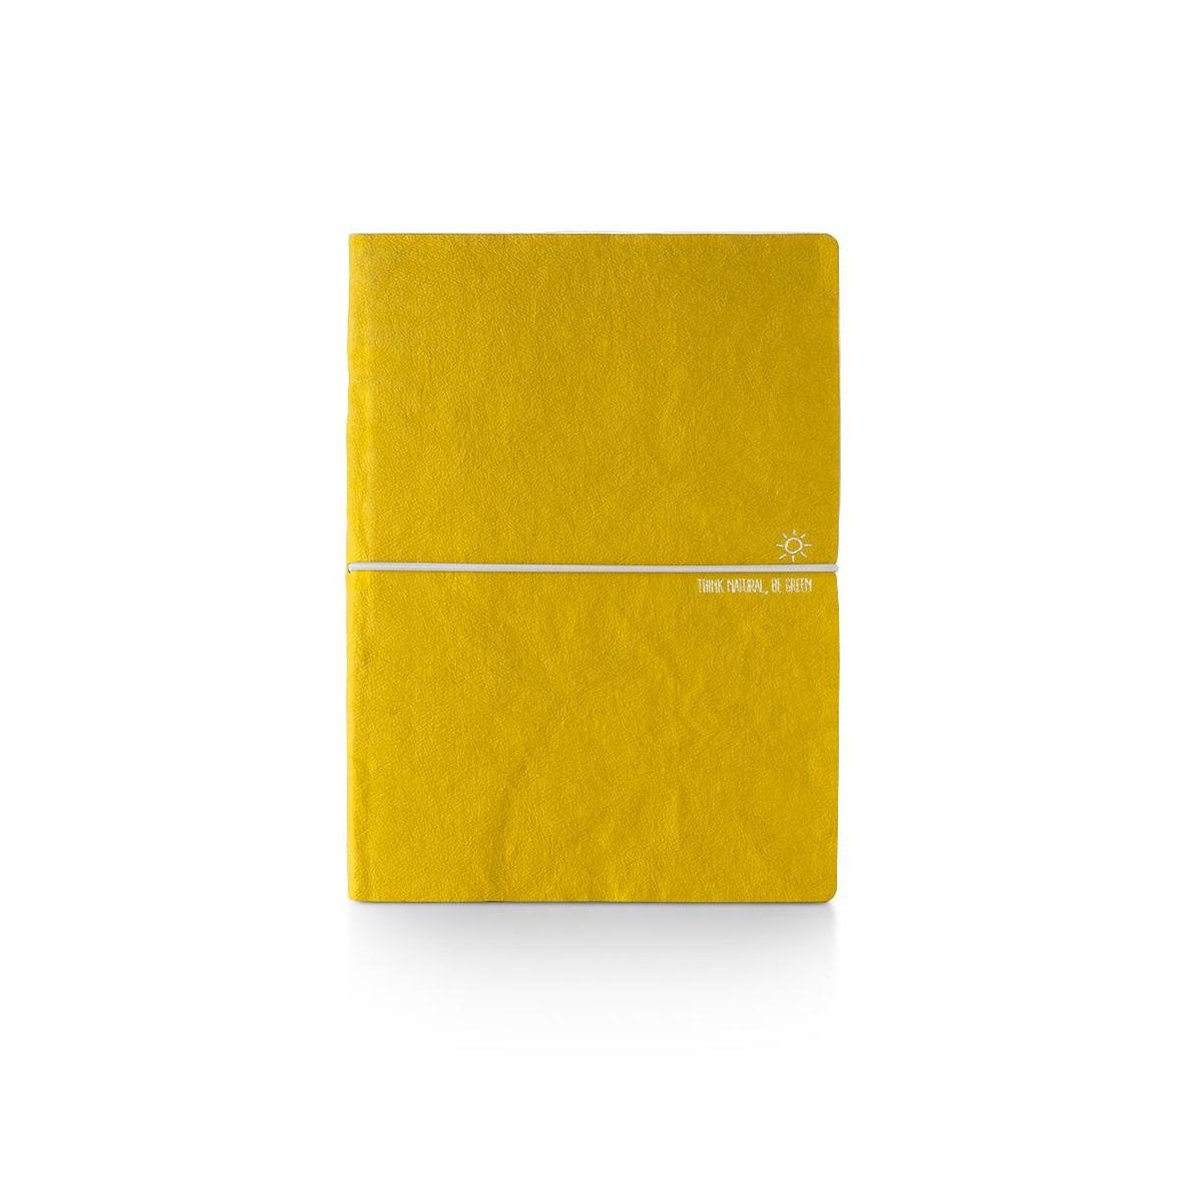 CIAK notitieboek Think Natural - ECO made - 12x17cm - gelinieerd - geschept papier - yellow